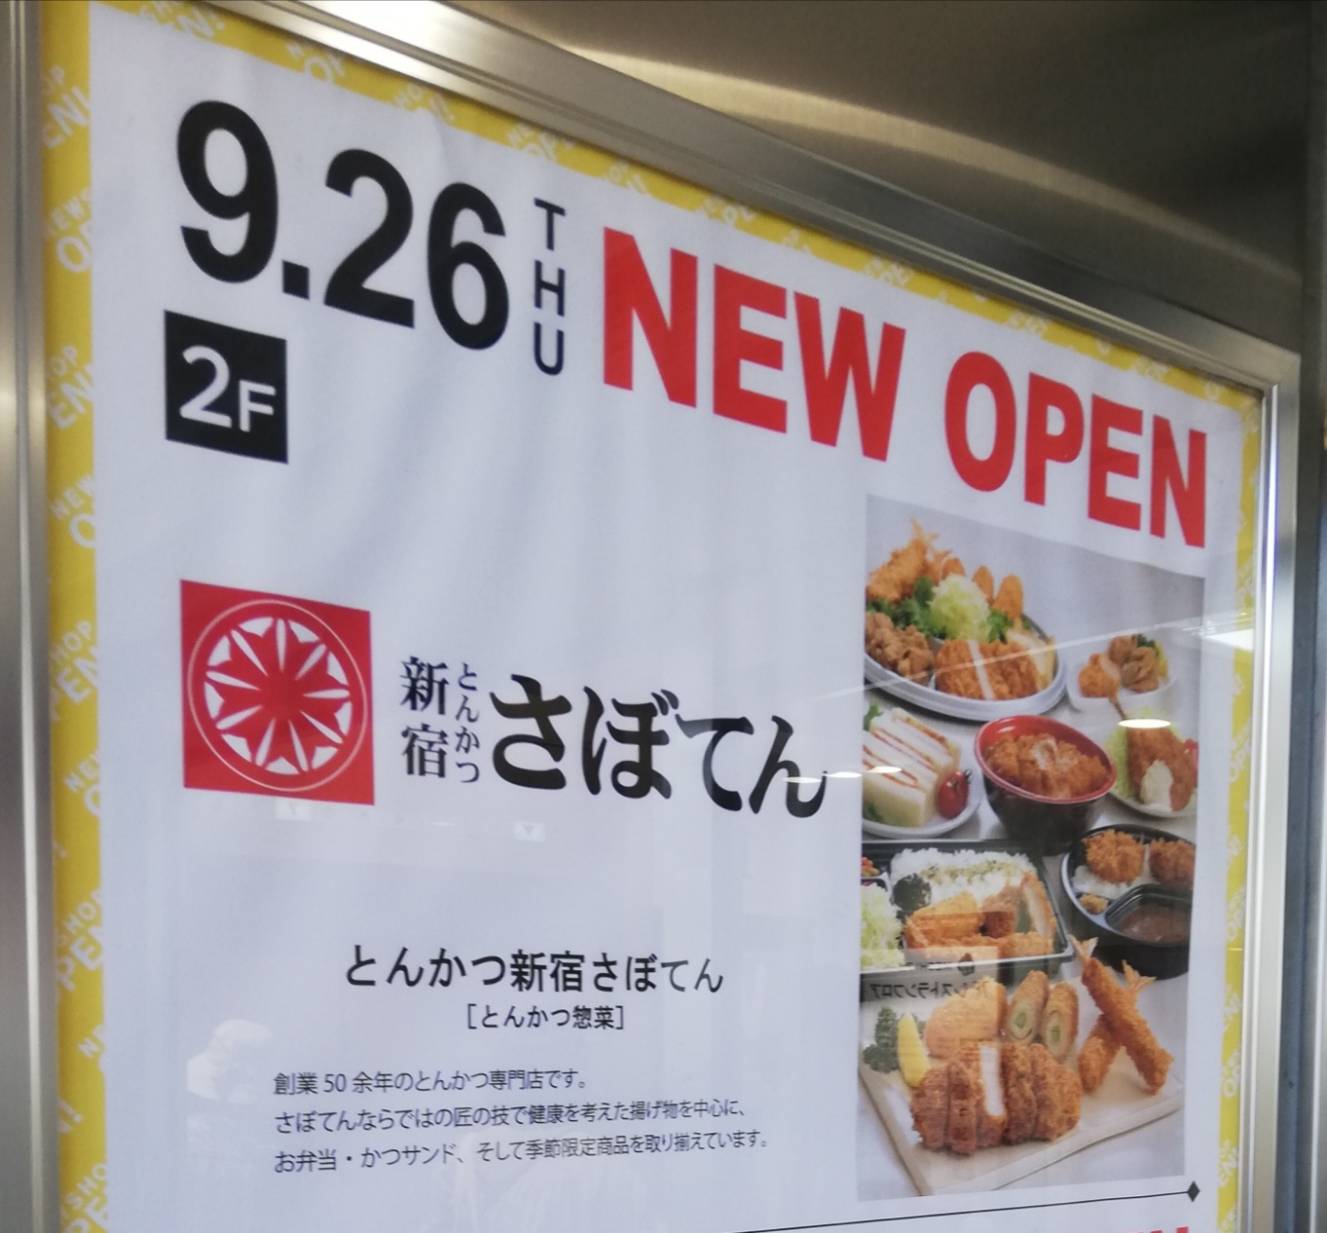 とんかつ新宿さぼてんデリカ店がオープン 限定かつも販売 アトレ松戸2階 松戸ロード 松戸の地域情報